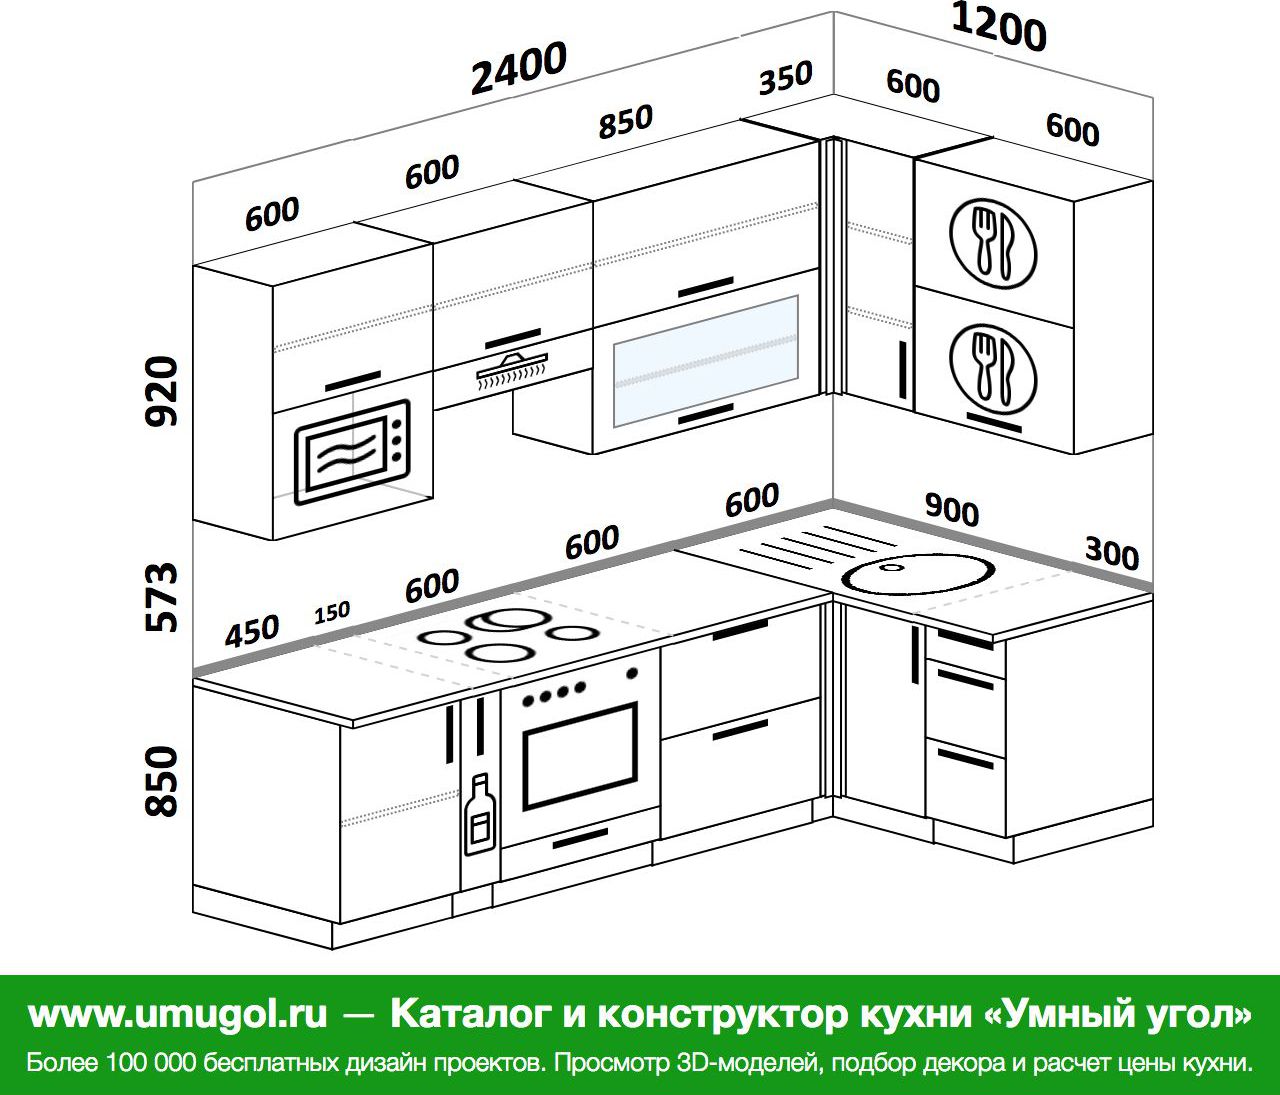 высота кухонных шкафчиков от пола